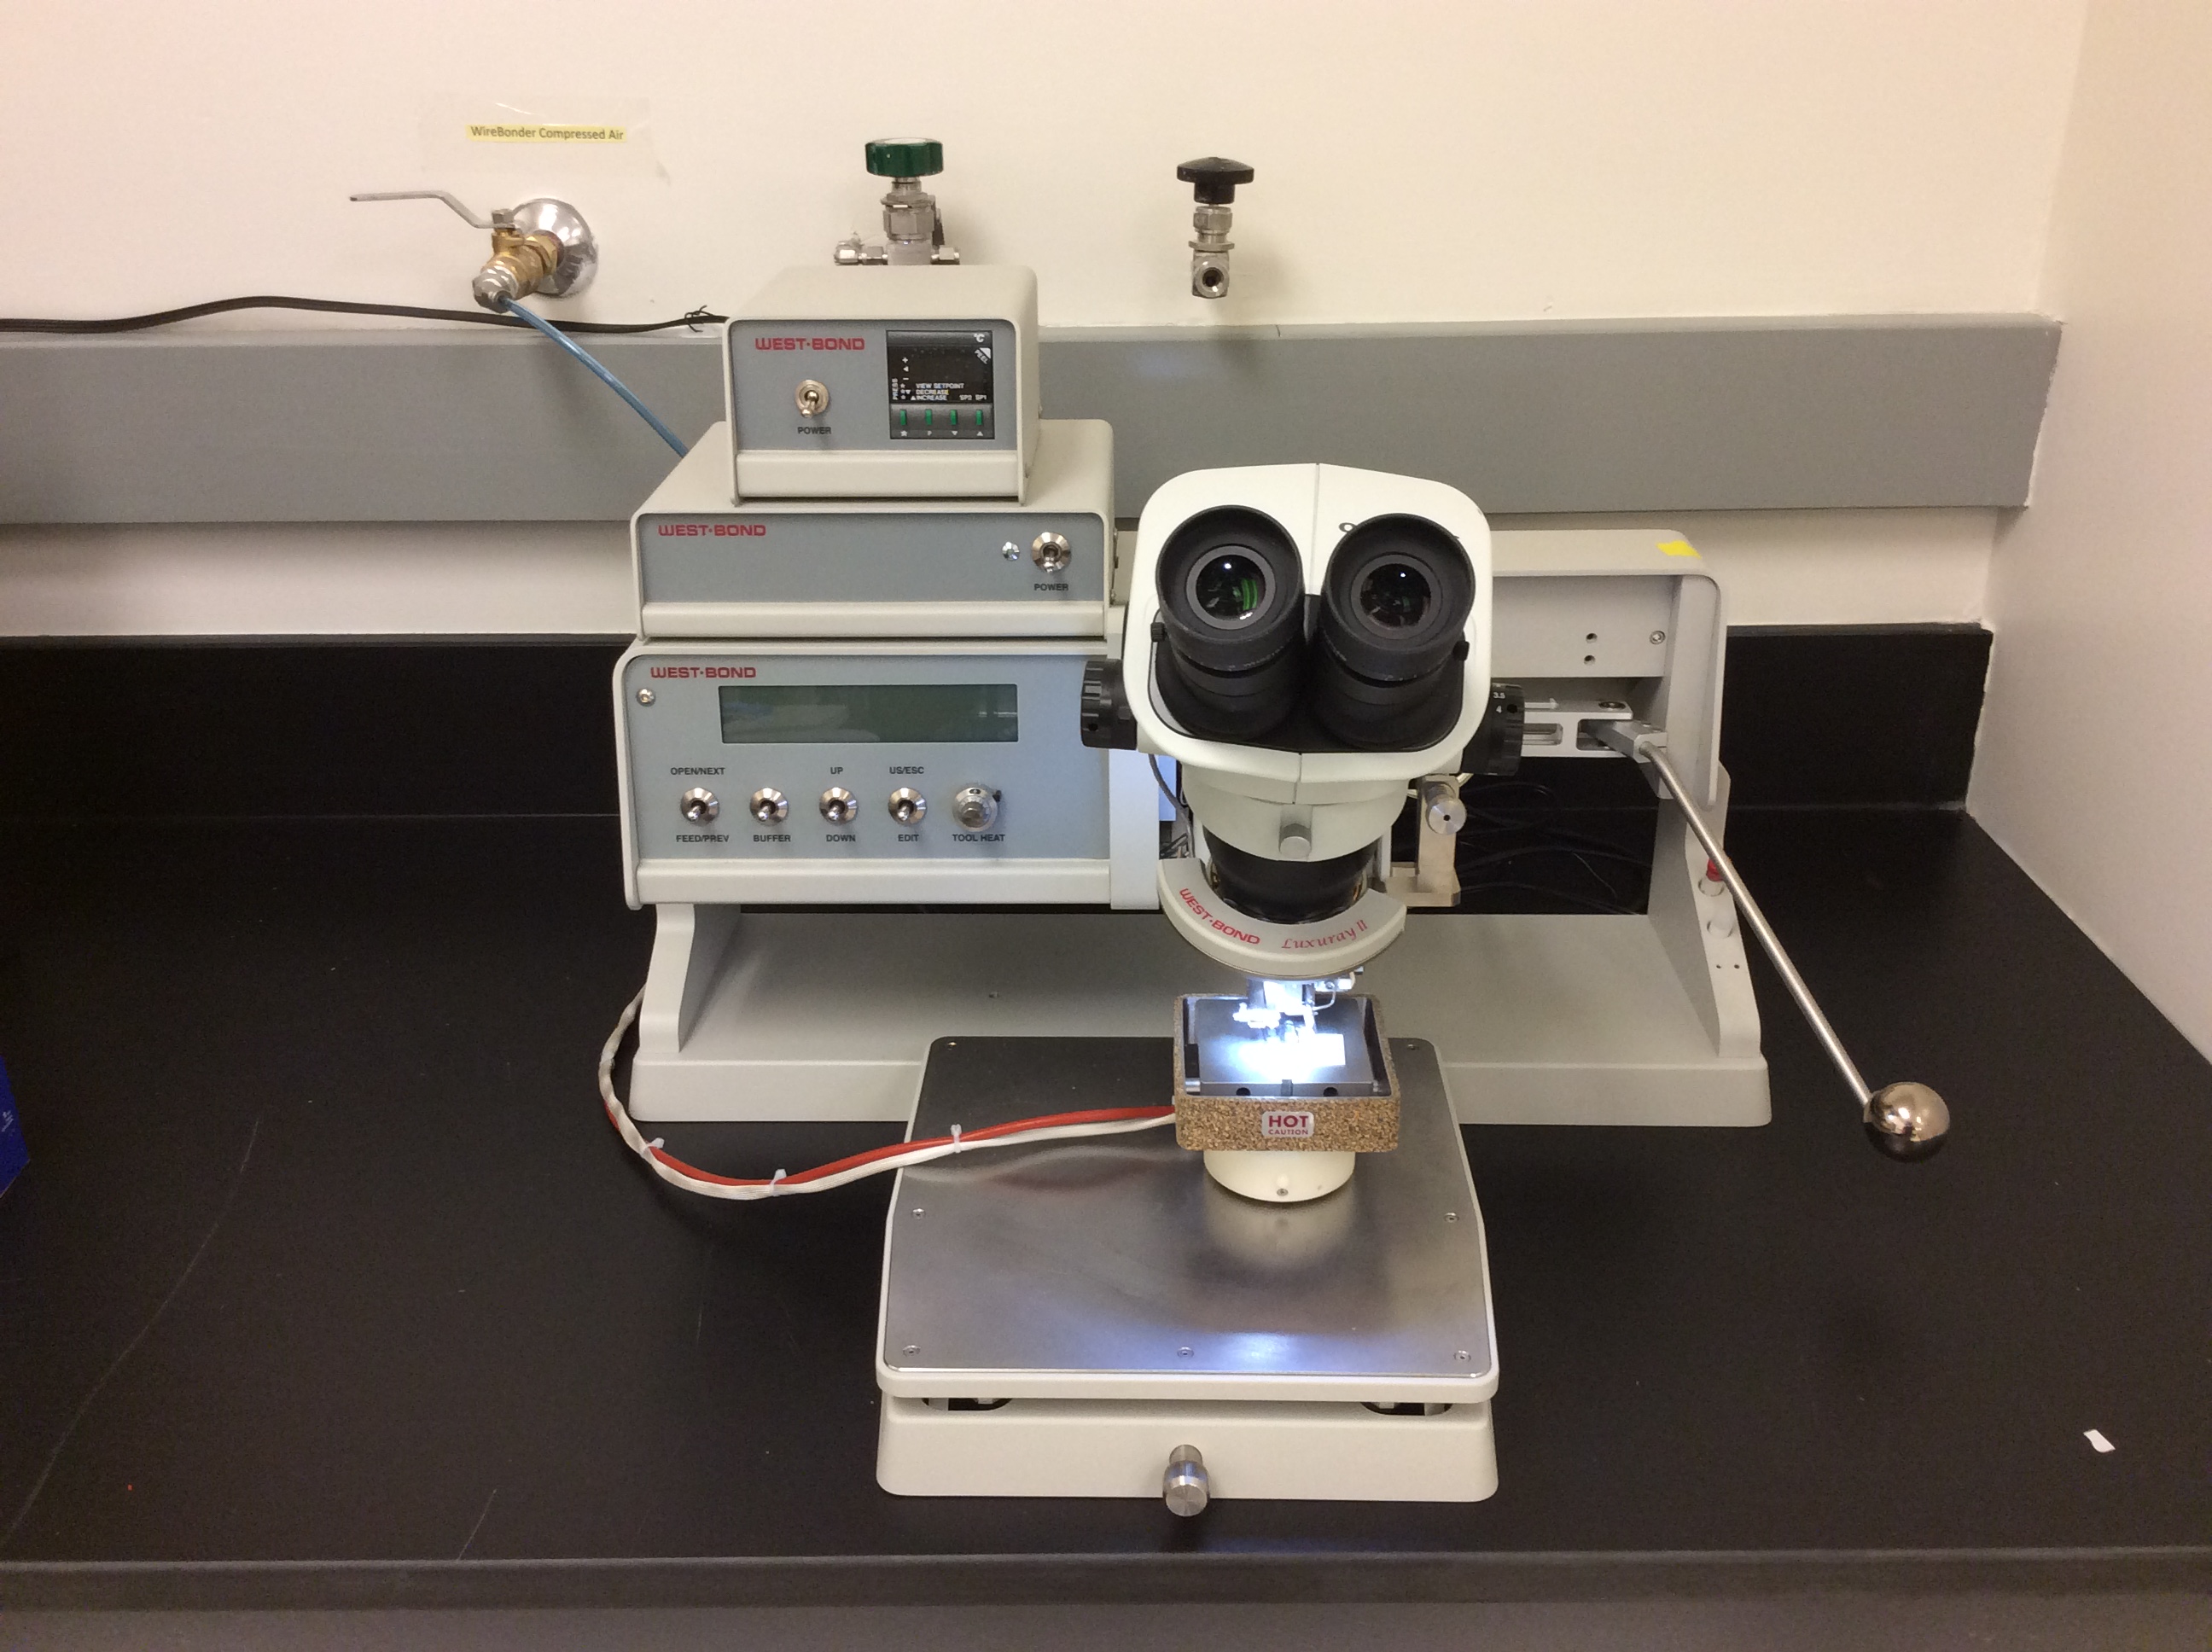 Image de la microsoudeuse de fissures sur un plan de travail de laboratoire.